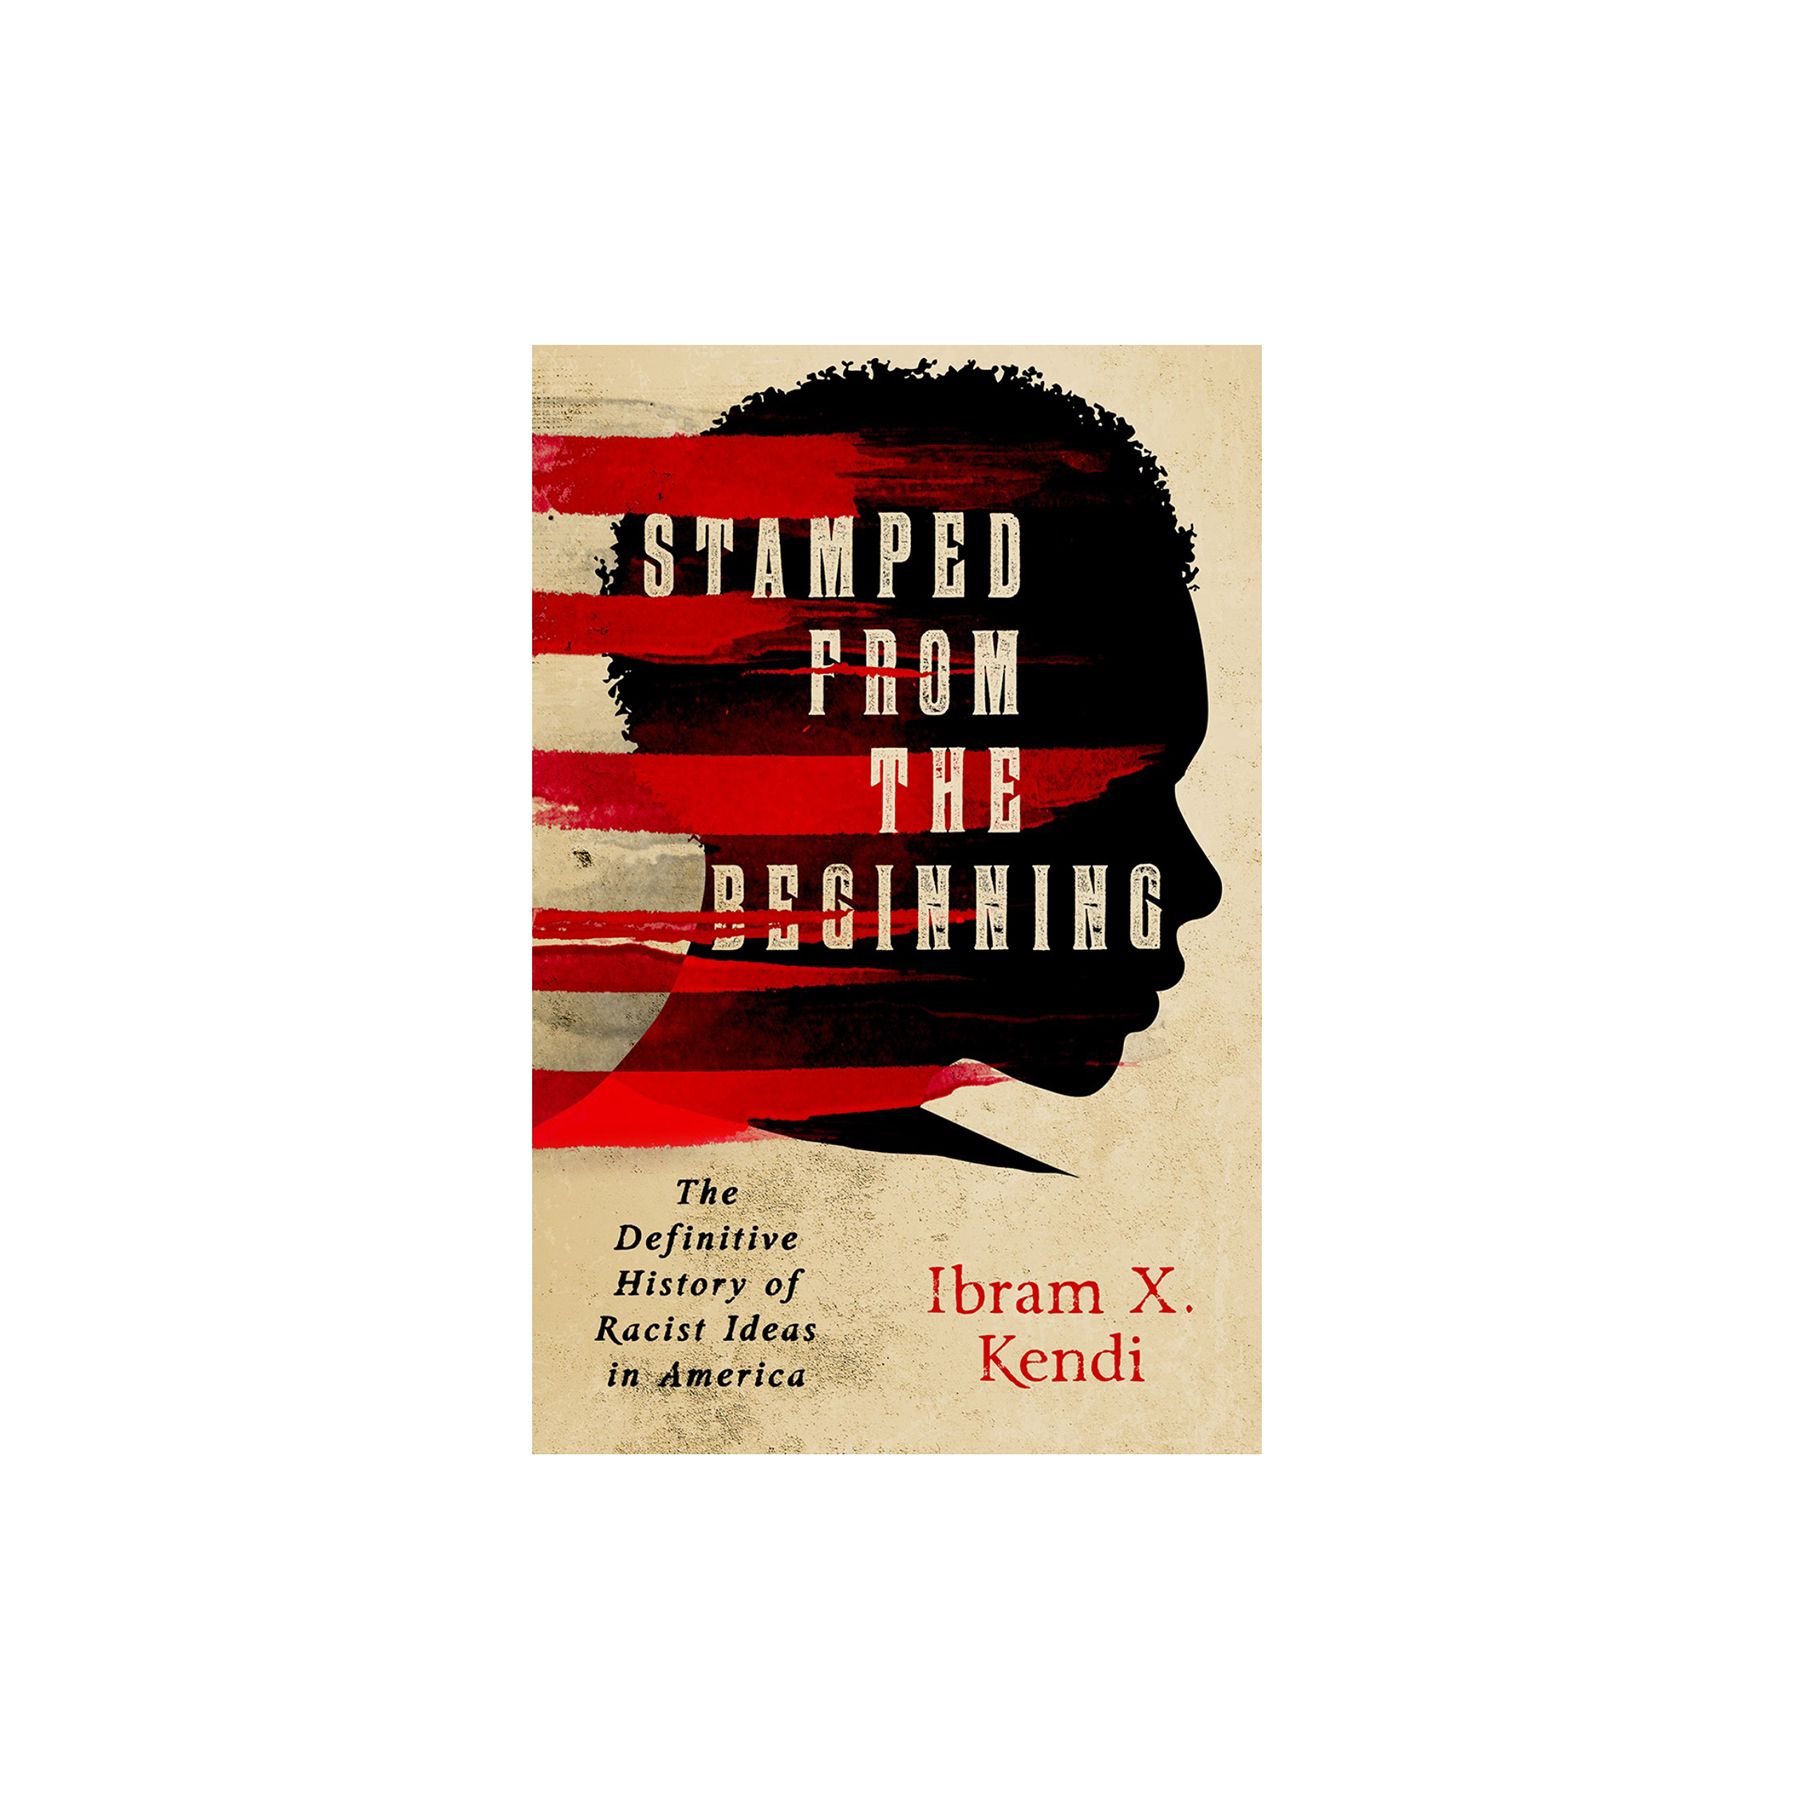 مختوم من البداية: التاريخ النهائي للأفكار العنصرية في أمريكا ، بقلم إبرام إكس كيندي